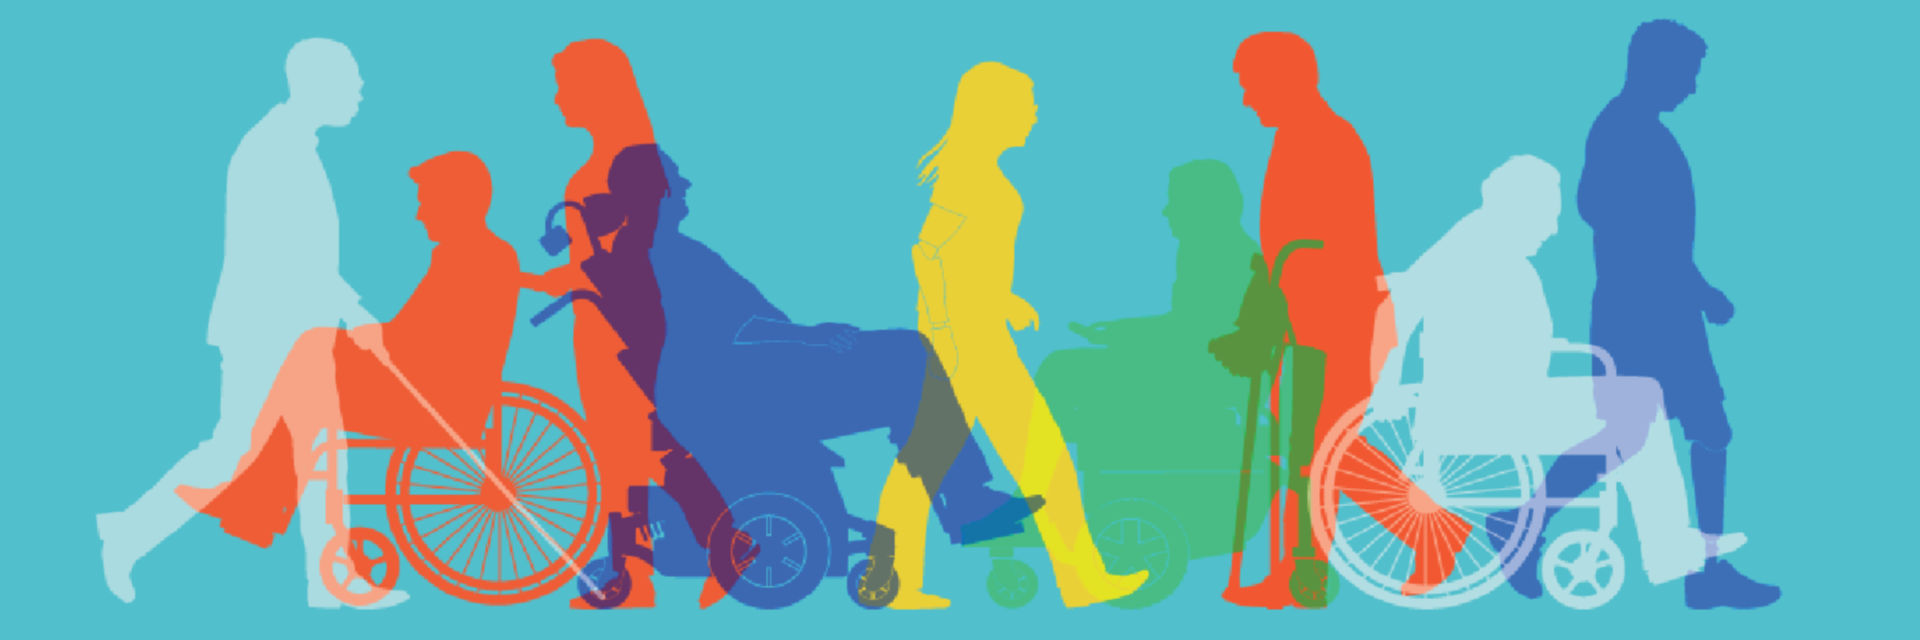 Dystrophie musculaire Canada et Vie autonome Canada s’associent pour l’élaboration du premier Plan d’action fédéral pour l’inclusion des personnes en situation de handicap